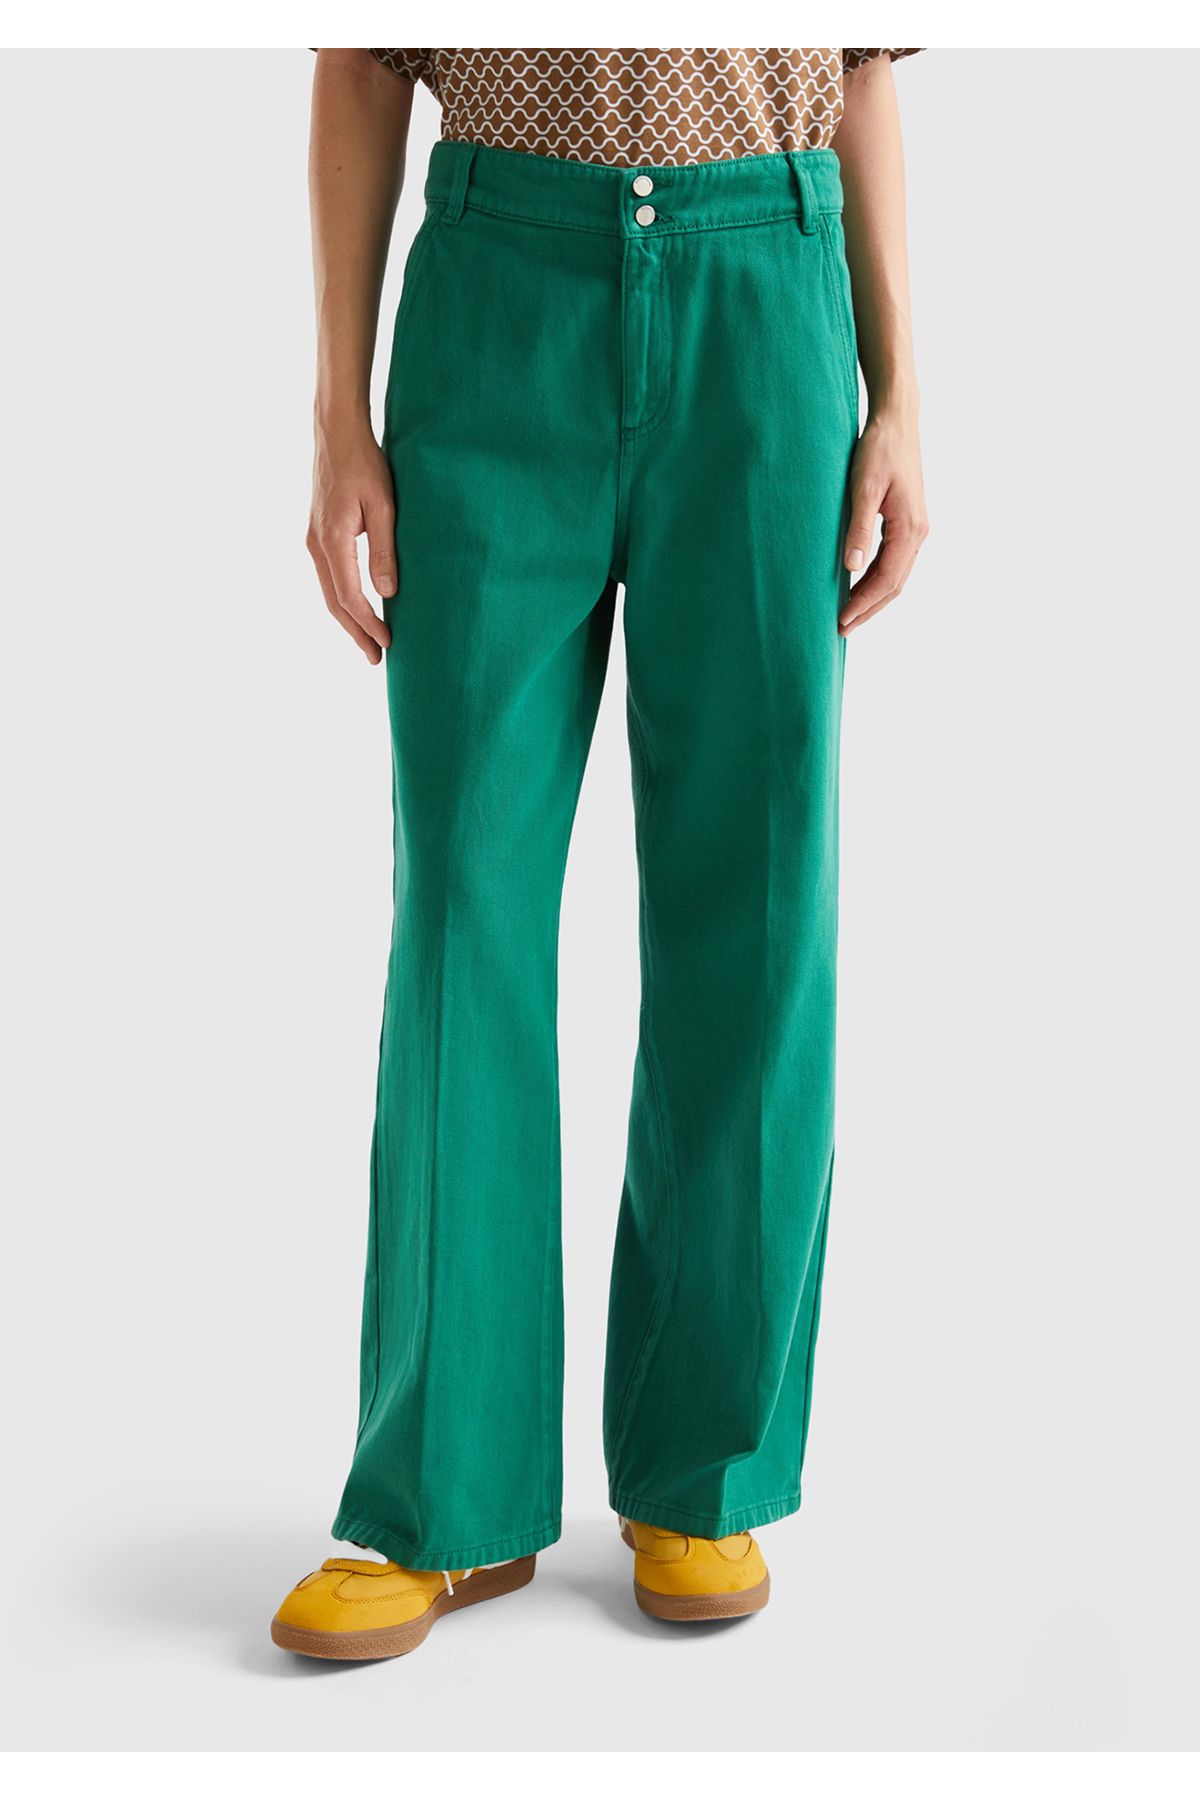 United Colors of Benetton Kadın Yeşil Beli Lastikli Geniş Paça Denim Pantolon